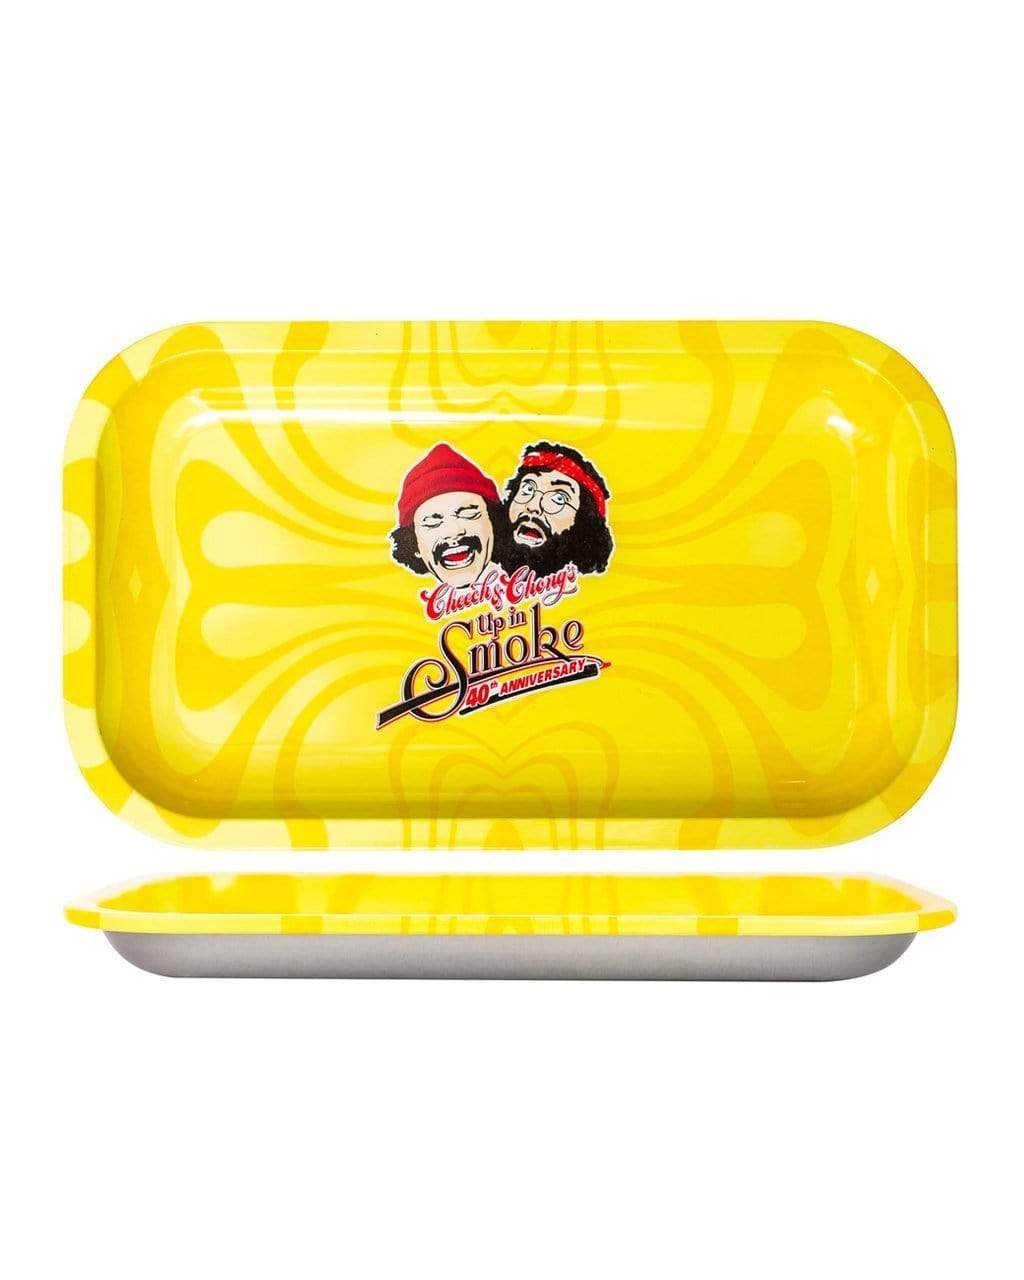 Cheech & Chong's Up in Smoke Yellow Rolling Tray